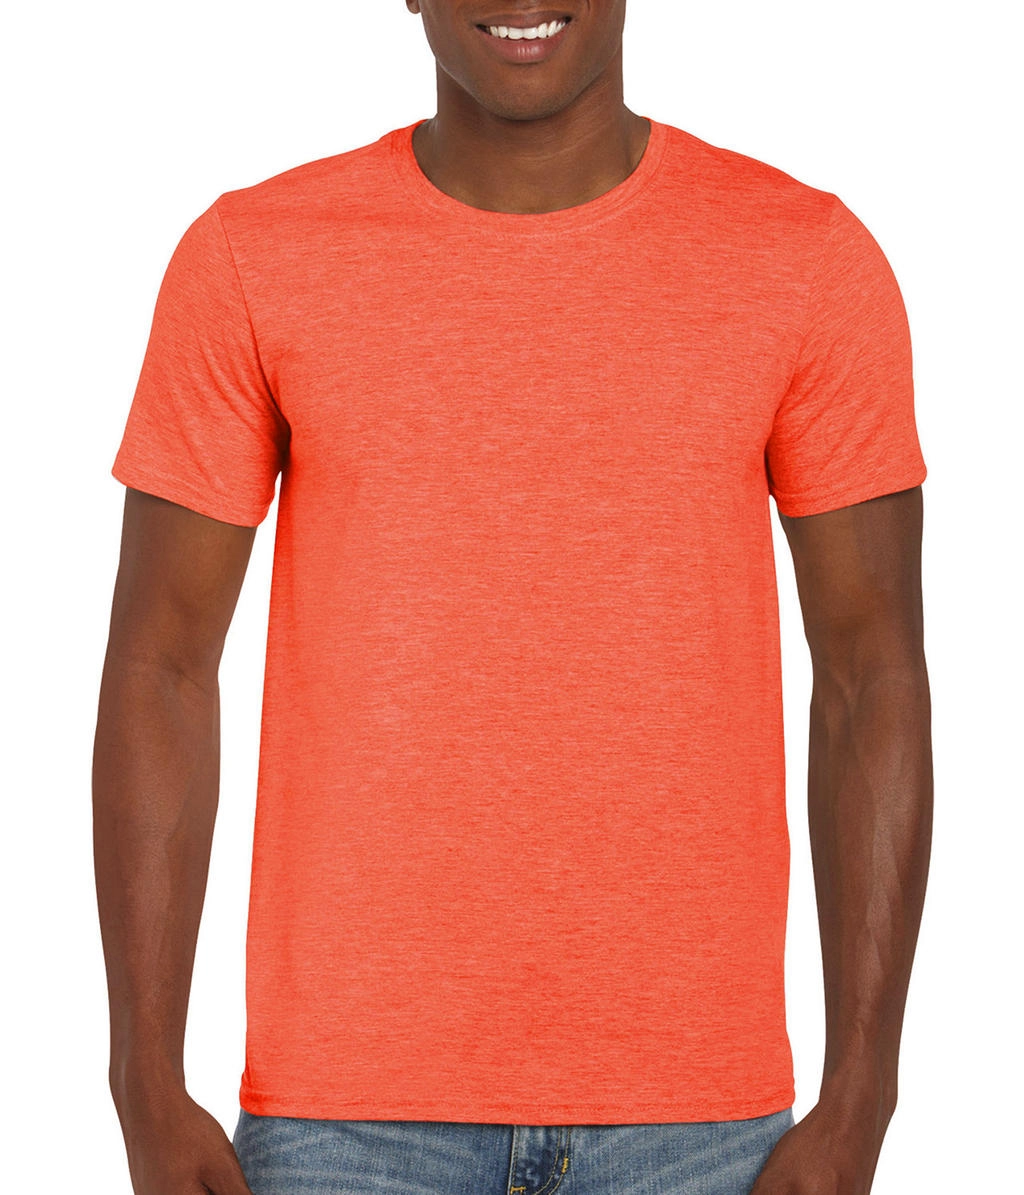 Softstyle® Ring Spun T-Shirt zum Besticken und Bedrucken in der Farbe Heather Orange mit Ihren Logo, Schriftzug oder Motiv.